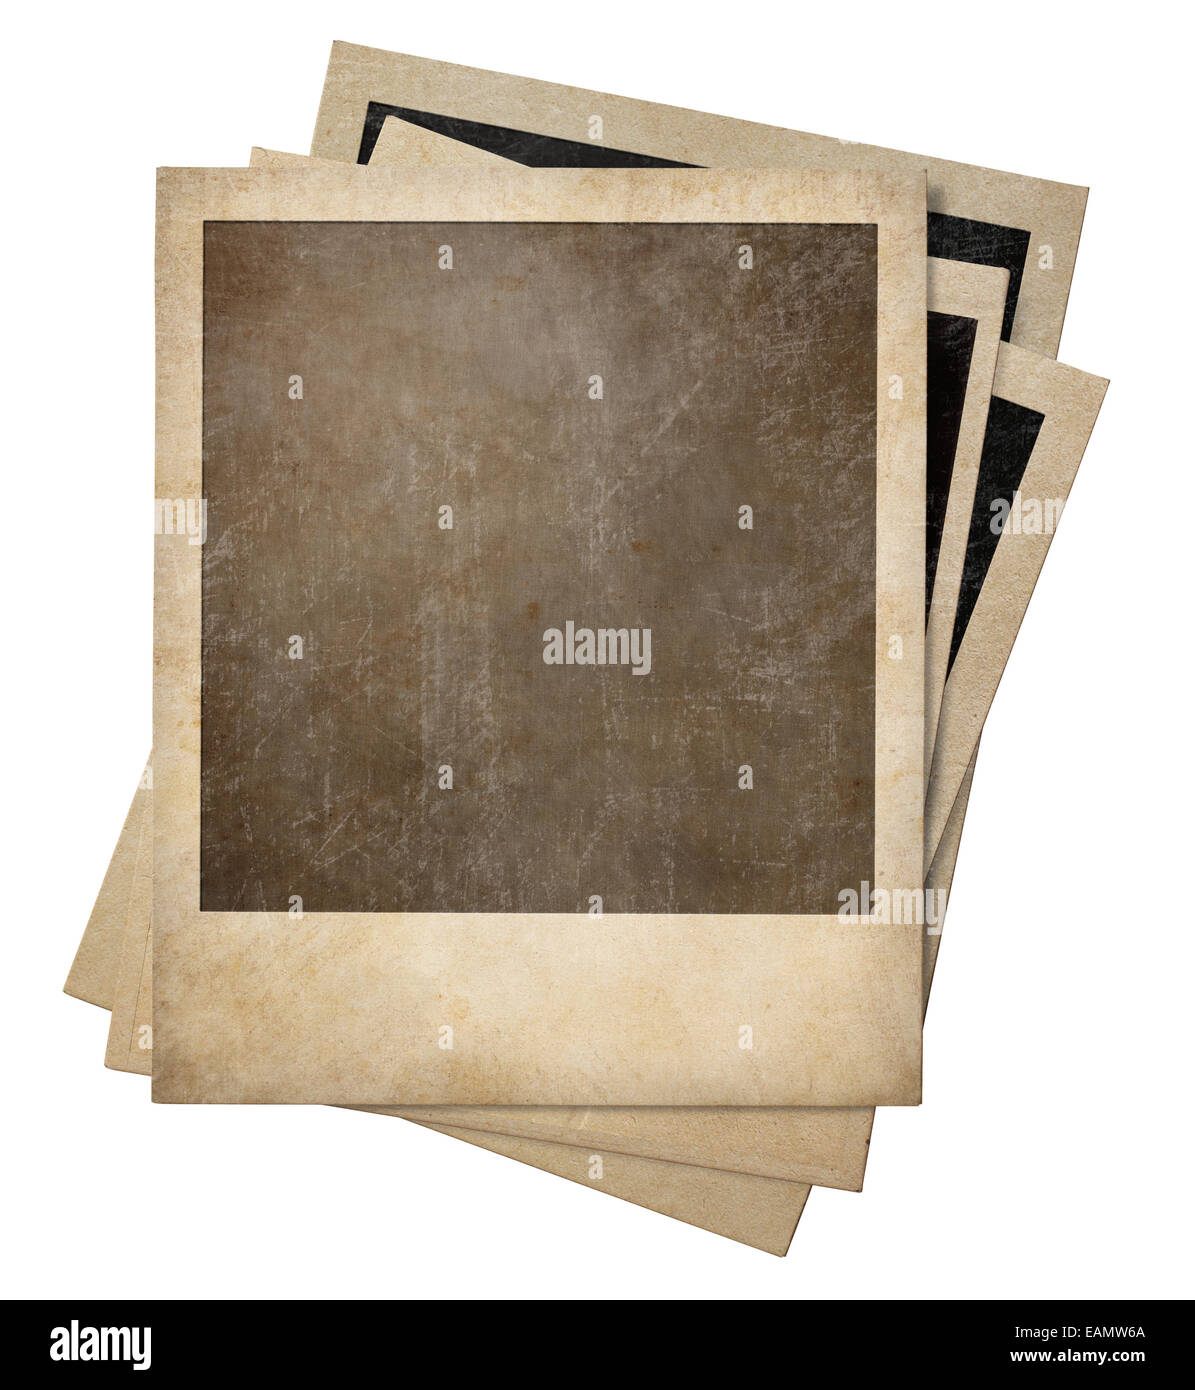 Cadres photo Polaroid vieux isolés de la pile Banque D'Images